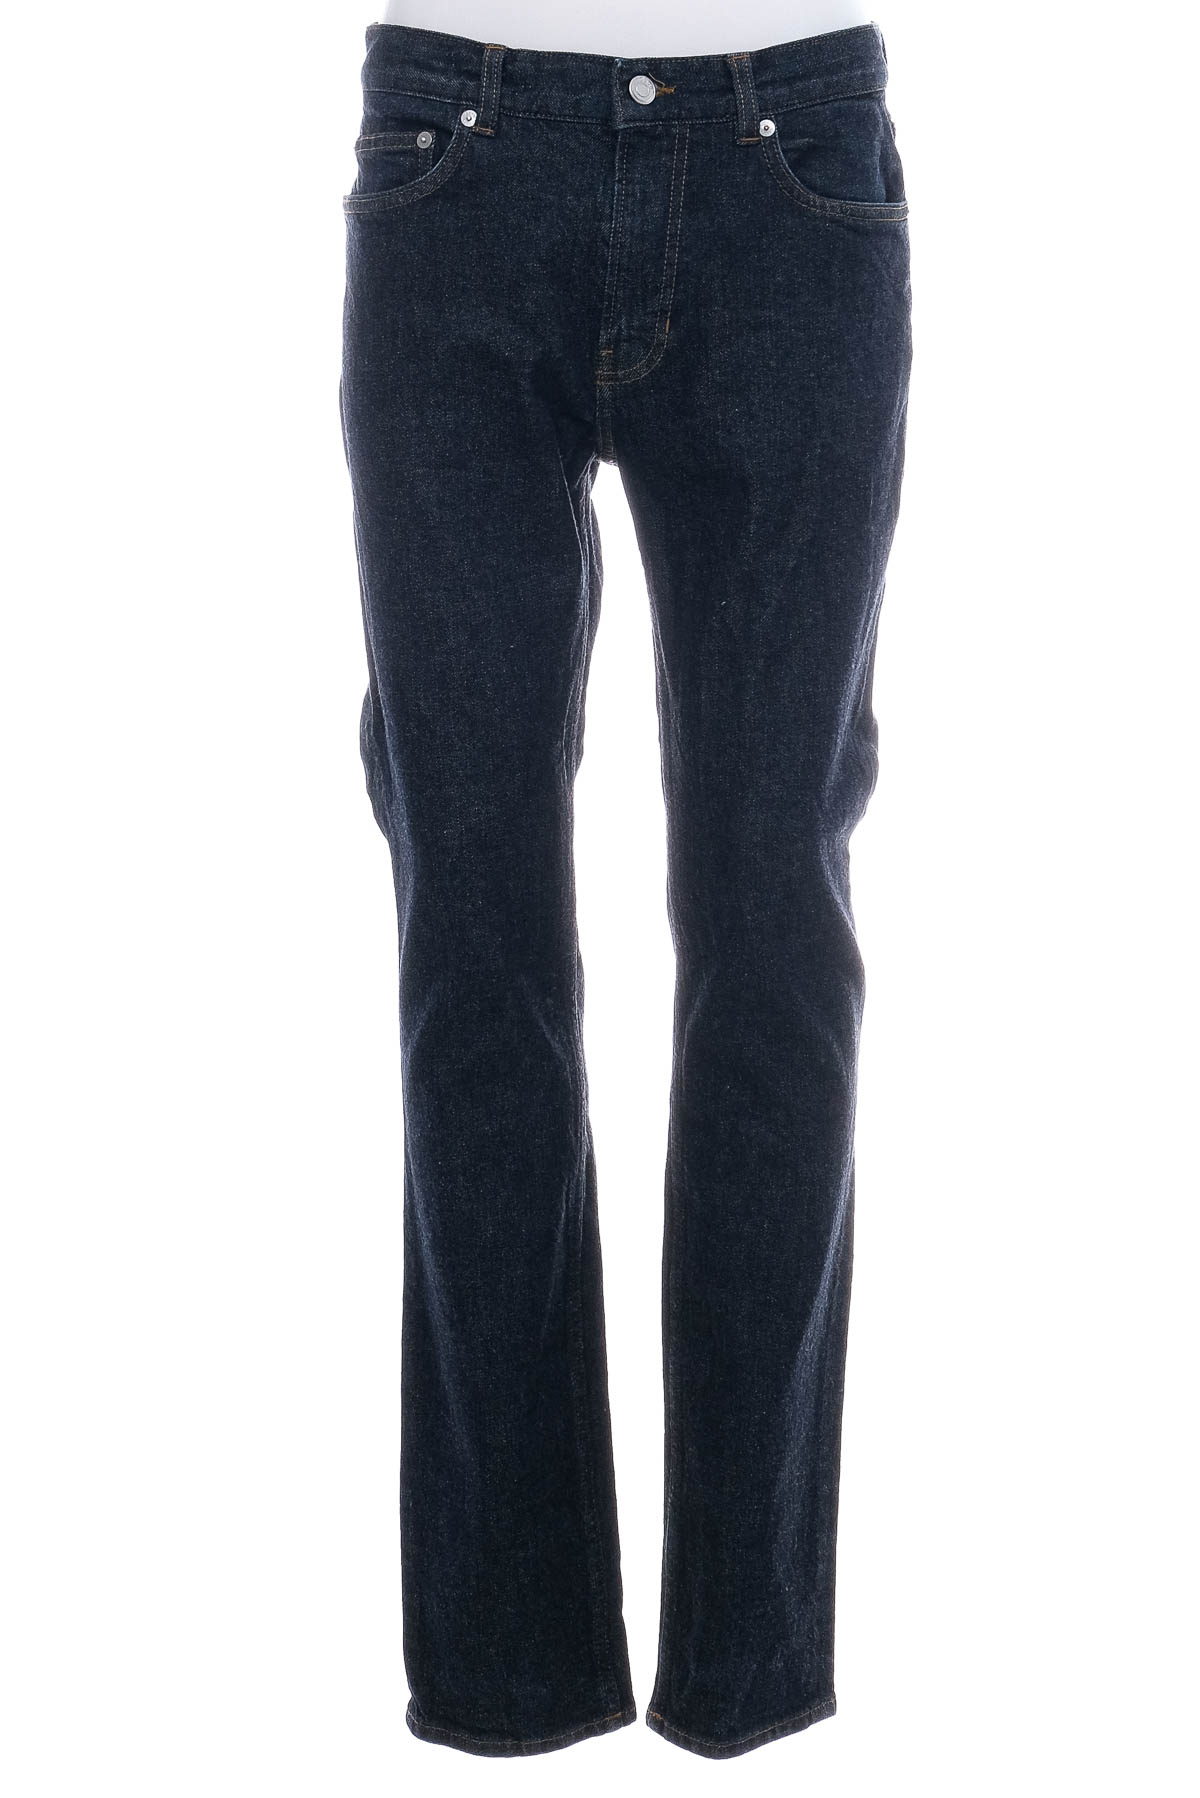 Jeans pentru bărbăți - ARKET - 0